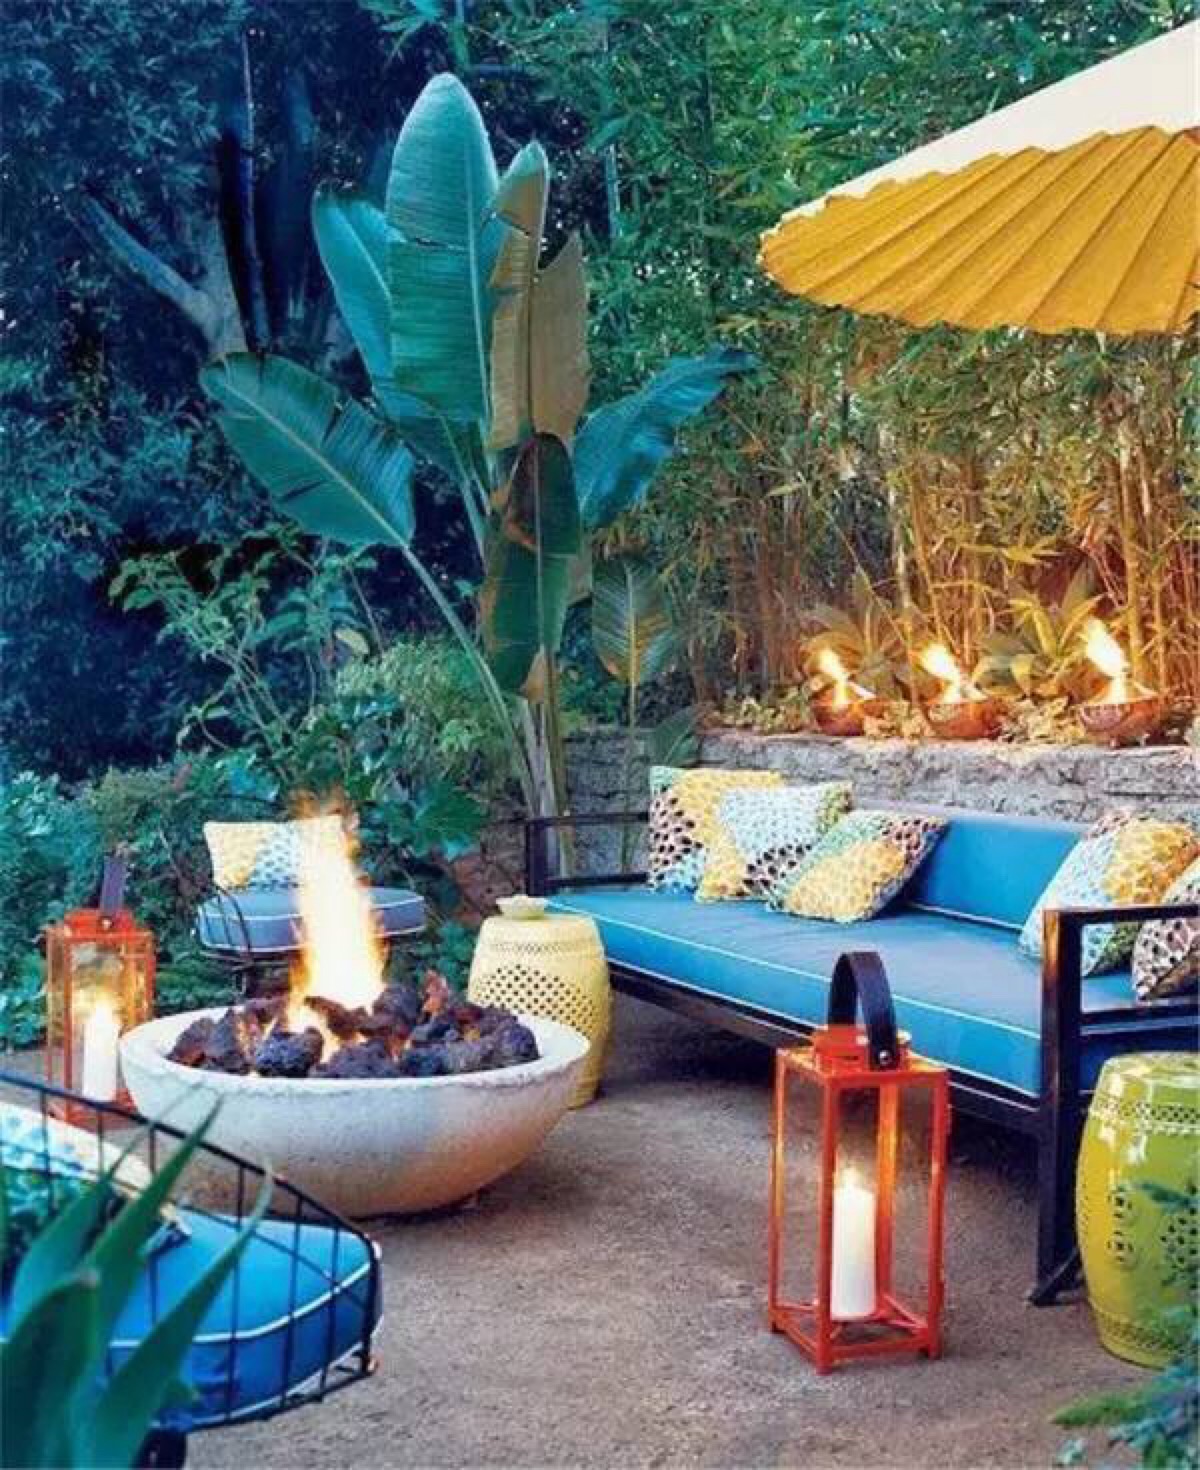 在惬意的夏日午后和傍晚,把桌椅摆到郁郁葱葱的庭院里